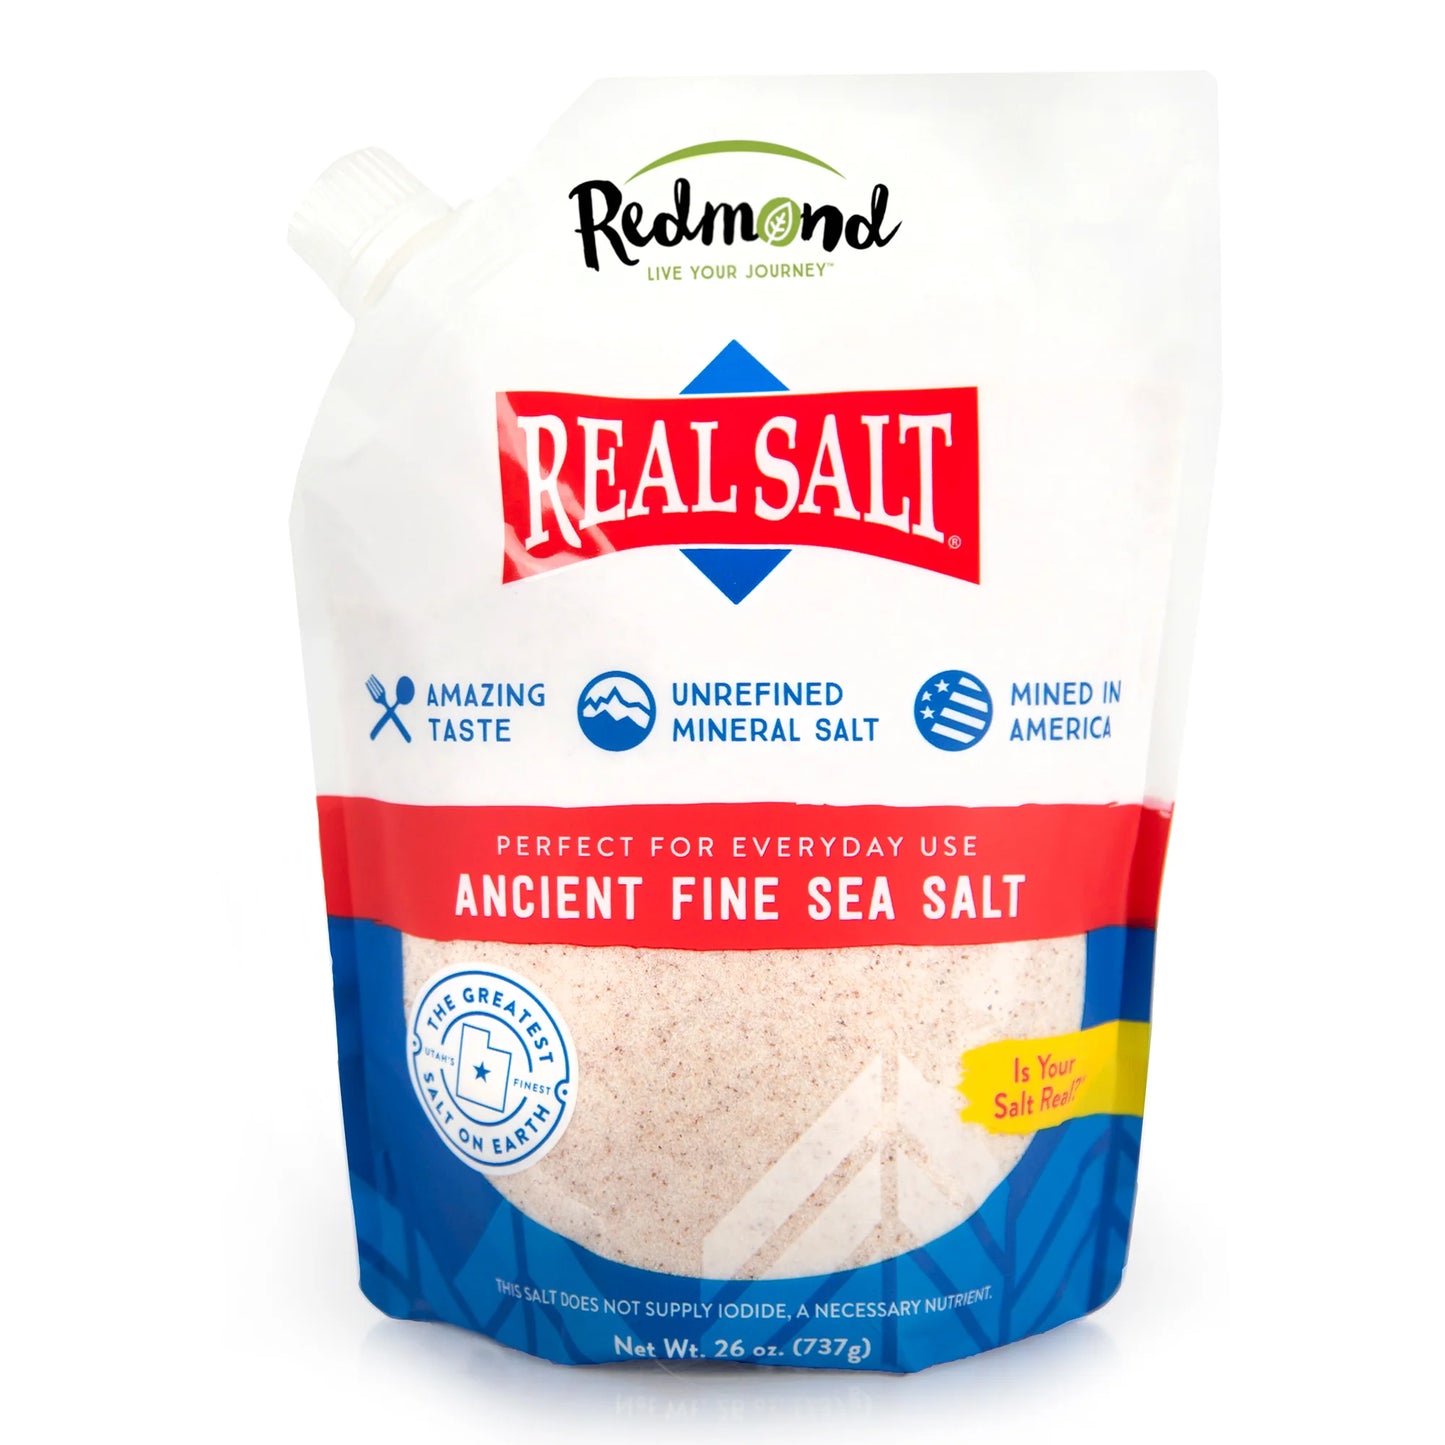 Redmond Real Salt - 4.75oz. to 26 oz.